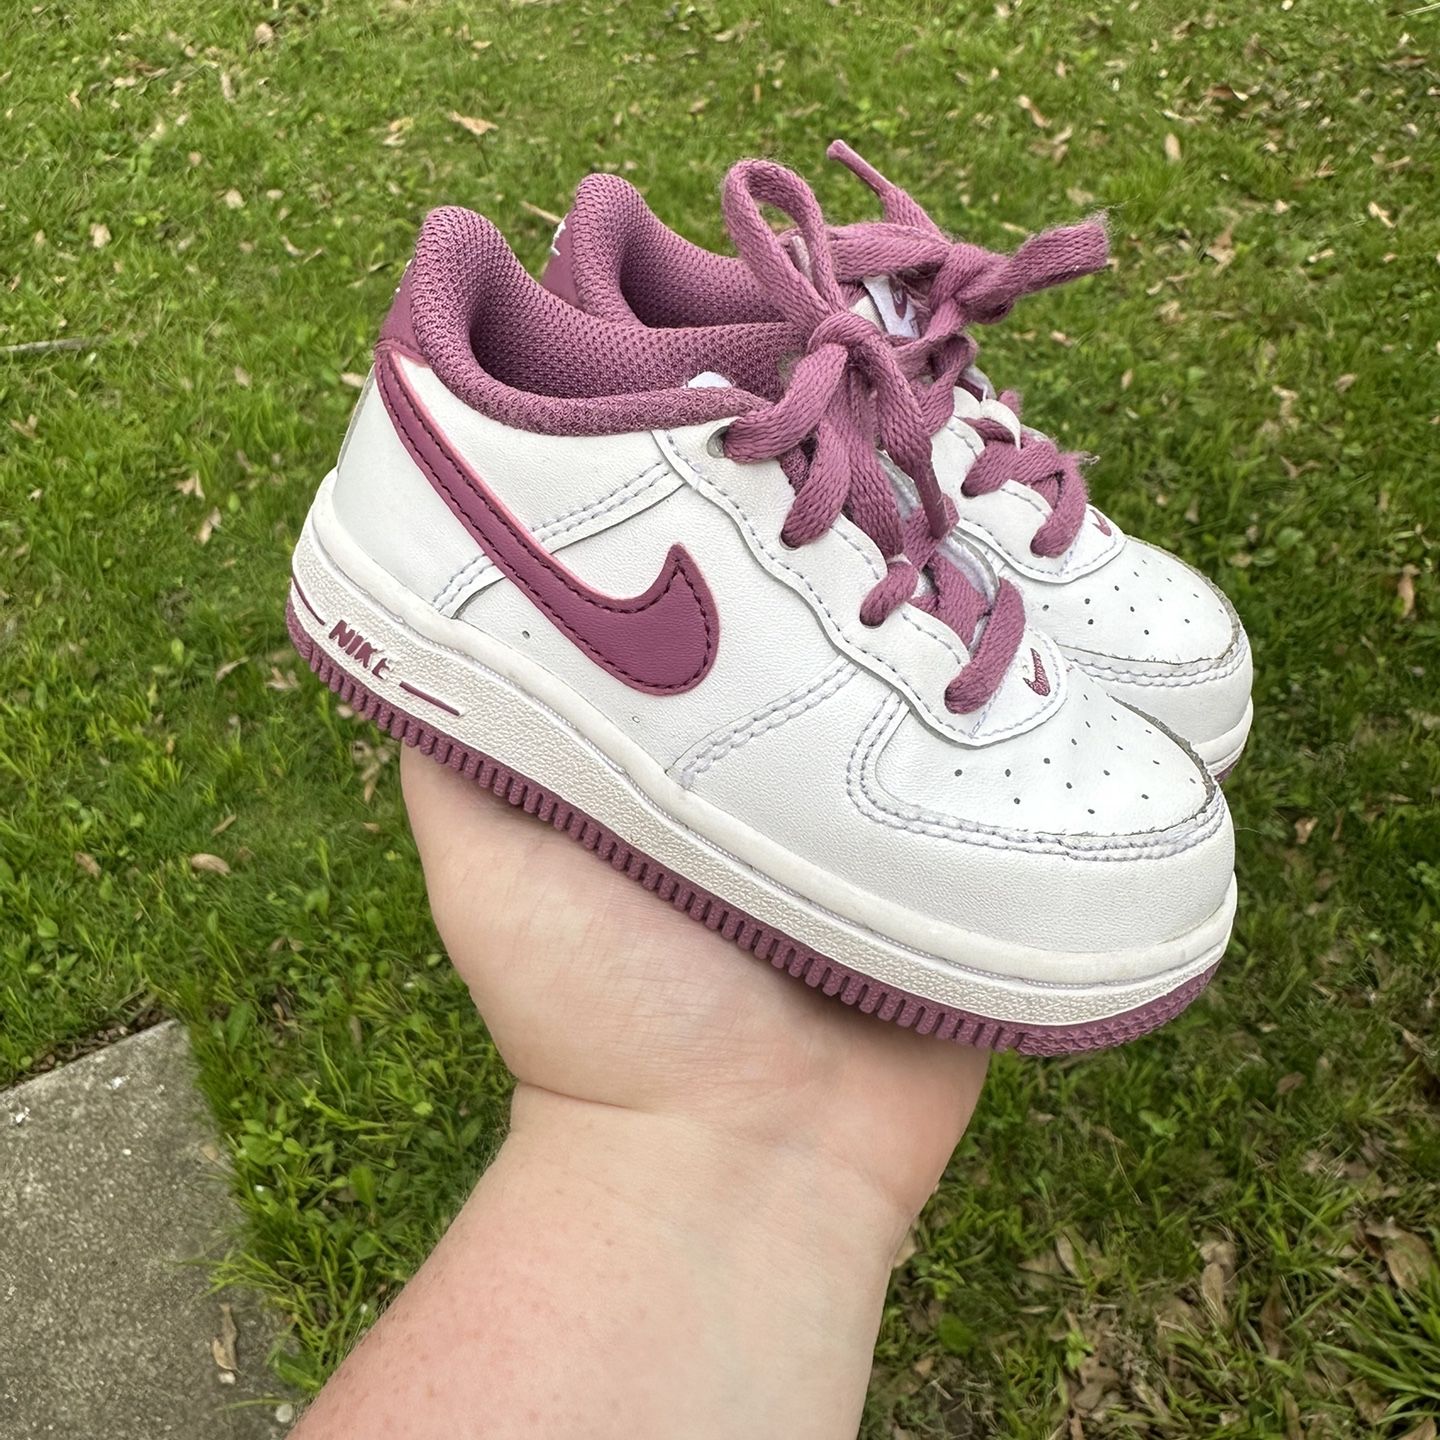 Toddler Nikes 